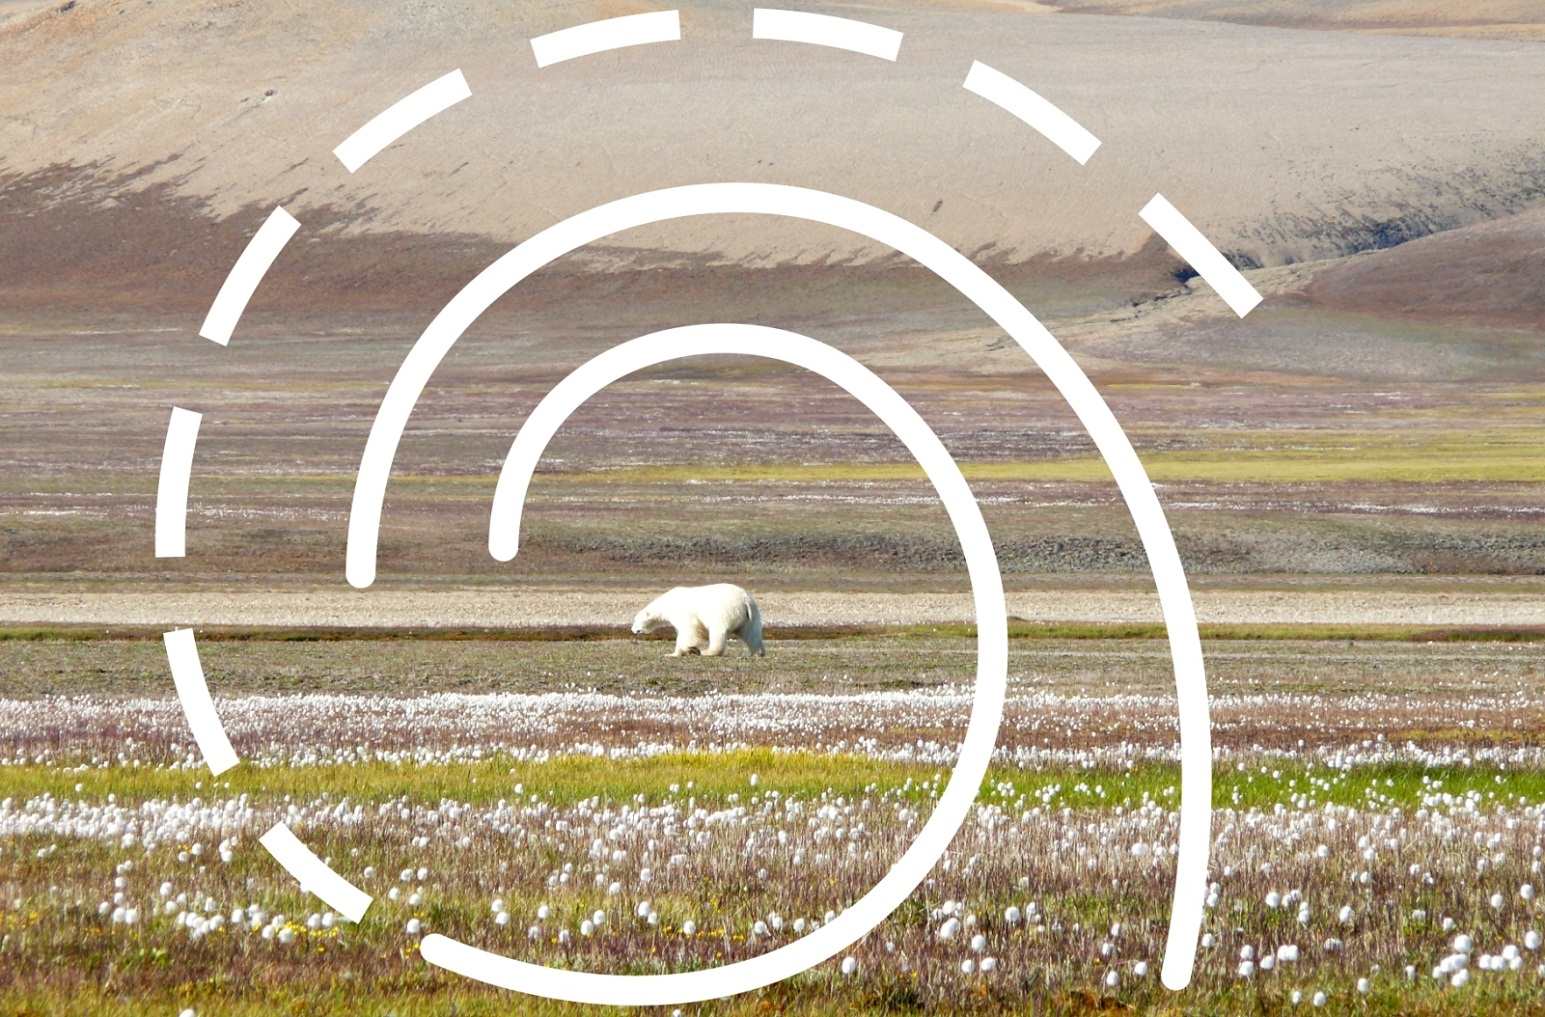 Ein Eisbär in der kanadischen Hocharktis im Frühling. Über dem Foto liegt eine grafische Spirale als Symbol für die Ausstellung "Arktische Spirale".